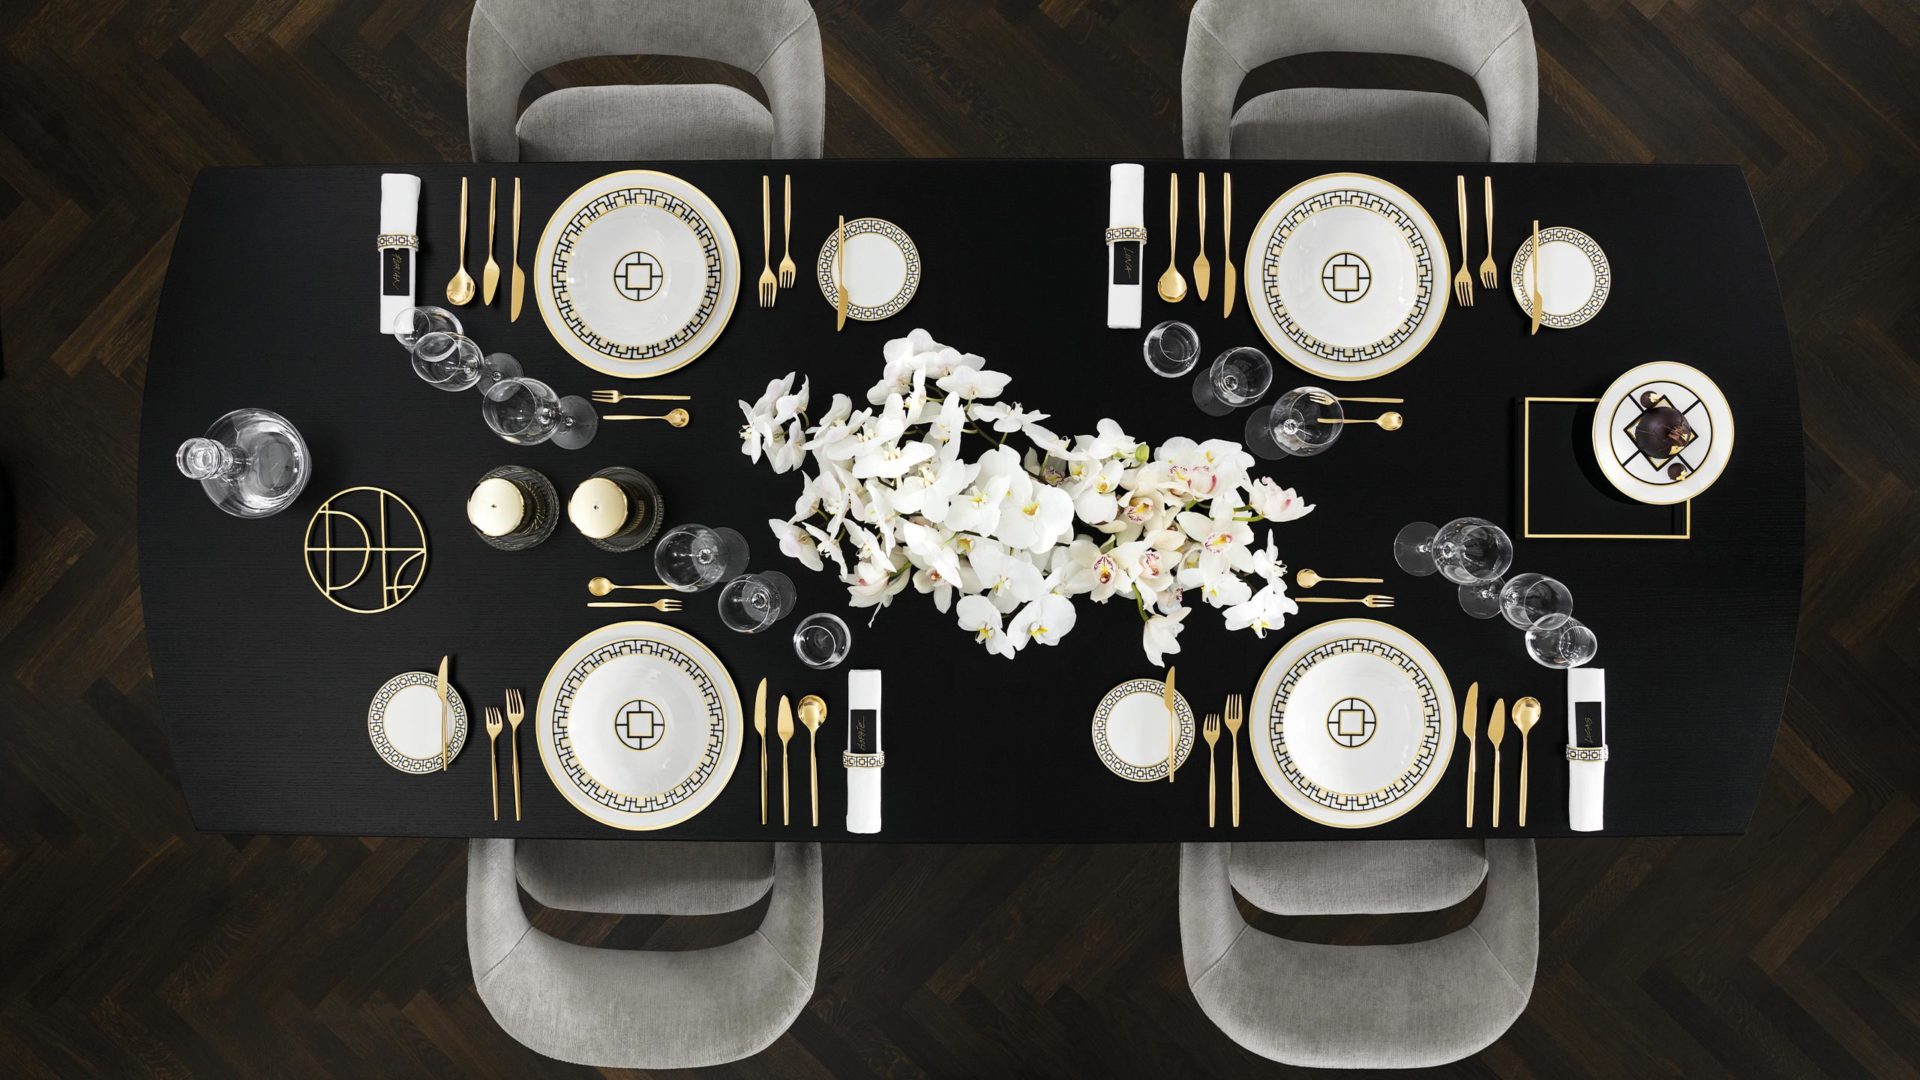 villeroy & boch metrochic geschirr in schwarz weiß gold festlich gedeckt auf einem schwarzen tisch mit samtstühlen